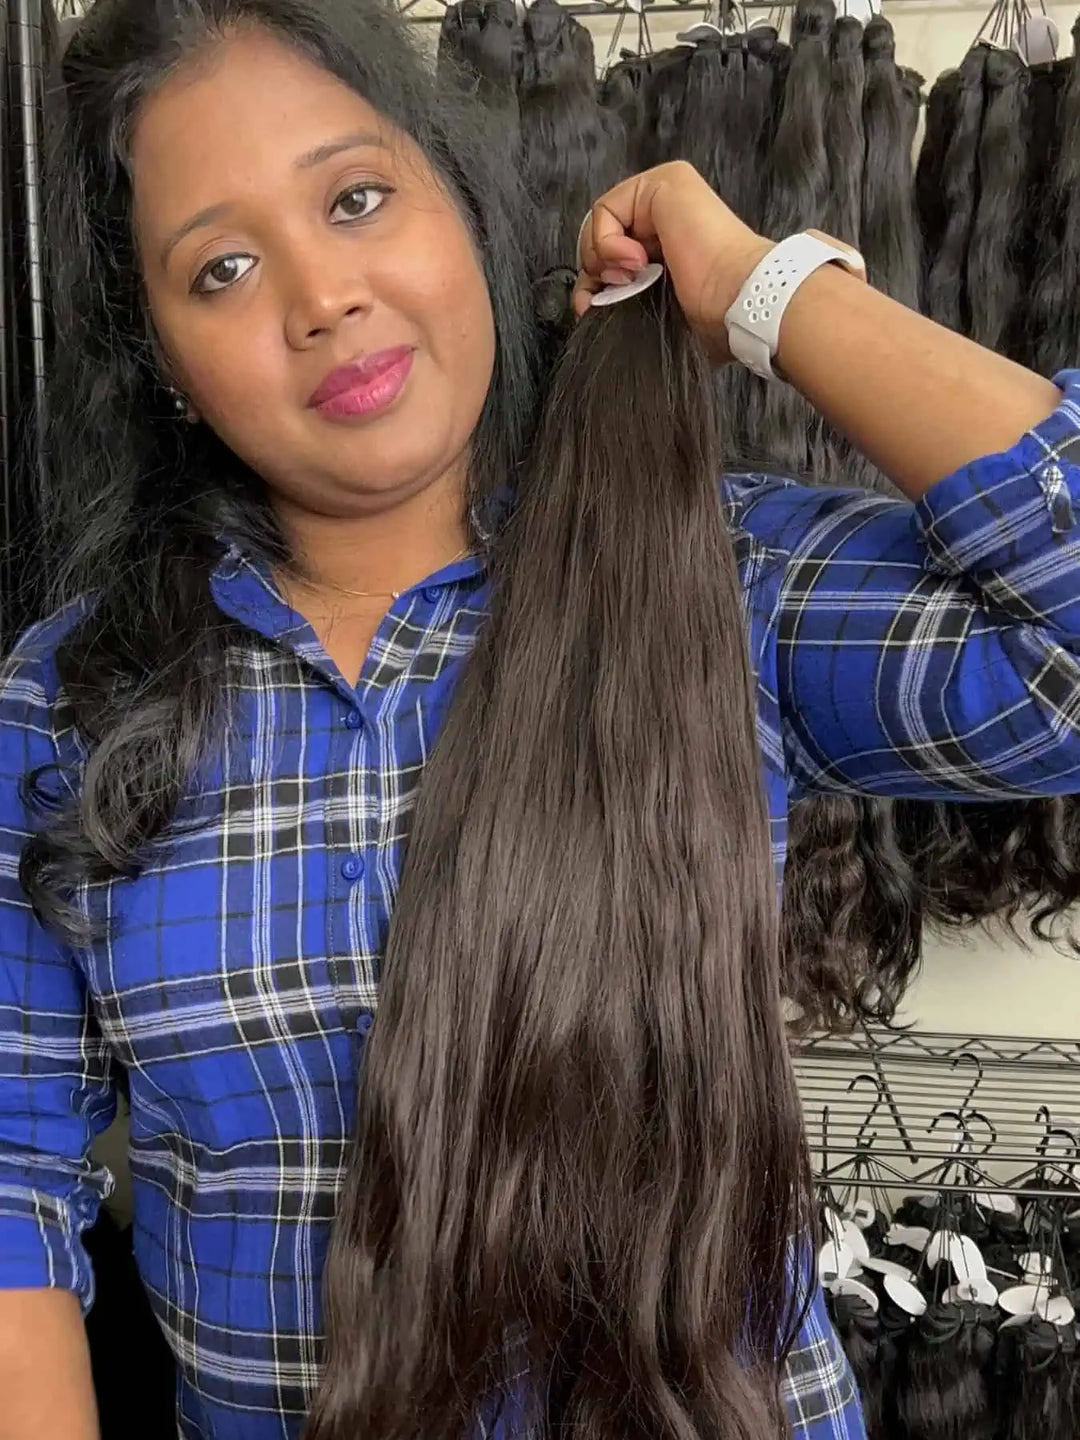 Russian Virgin Remy Human Hair, Clip-in Hair Extensions – Virgin Hair &  Beauty, The Best Hair Extensions, Real Virgin Human Hair.